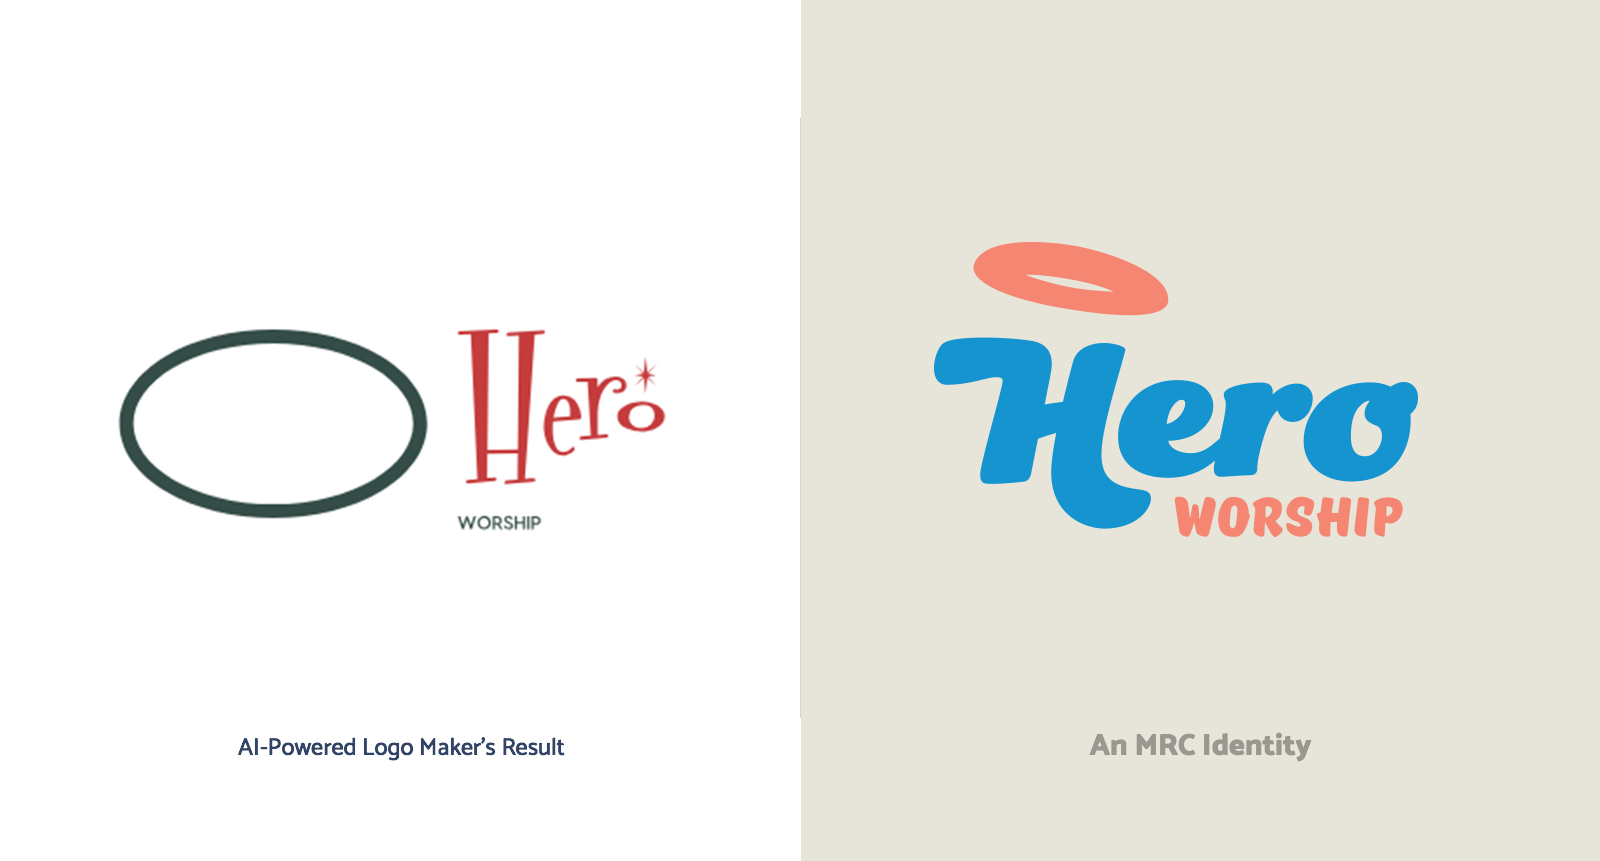 LogoJoy versus MRC Raleigh in a Logo Design Content for Hero Worship